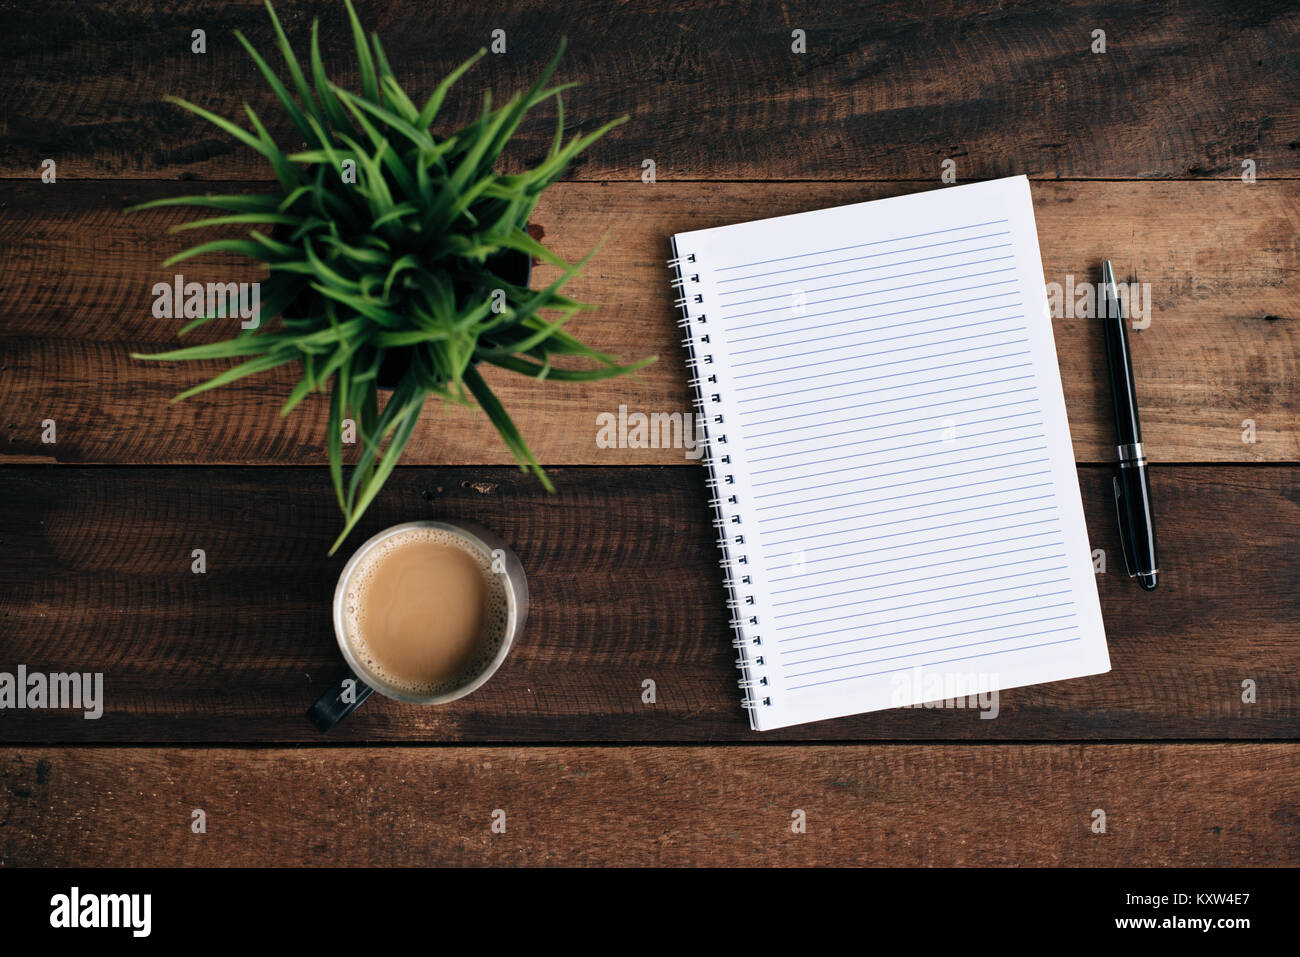 Kaffee, Gläser Kugelschreiber, grüne Pflanze und leeren Notebook auf Holztisch. Flach Top View Stockfoto